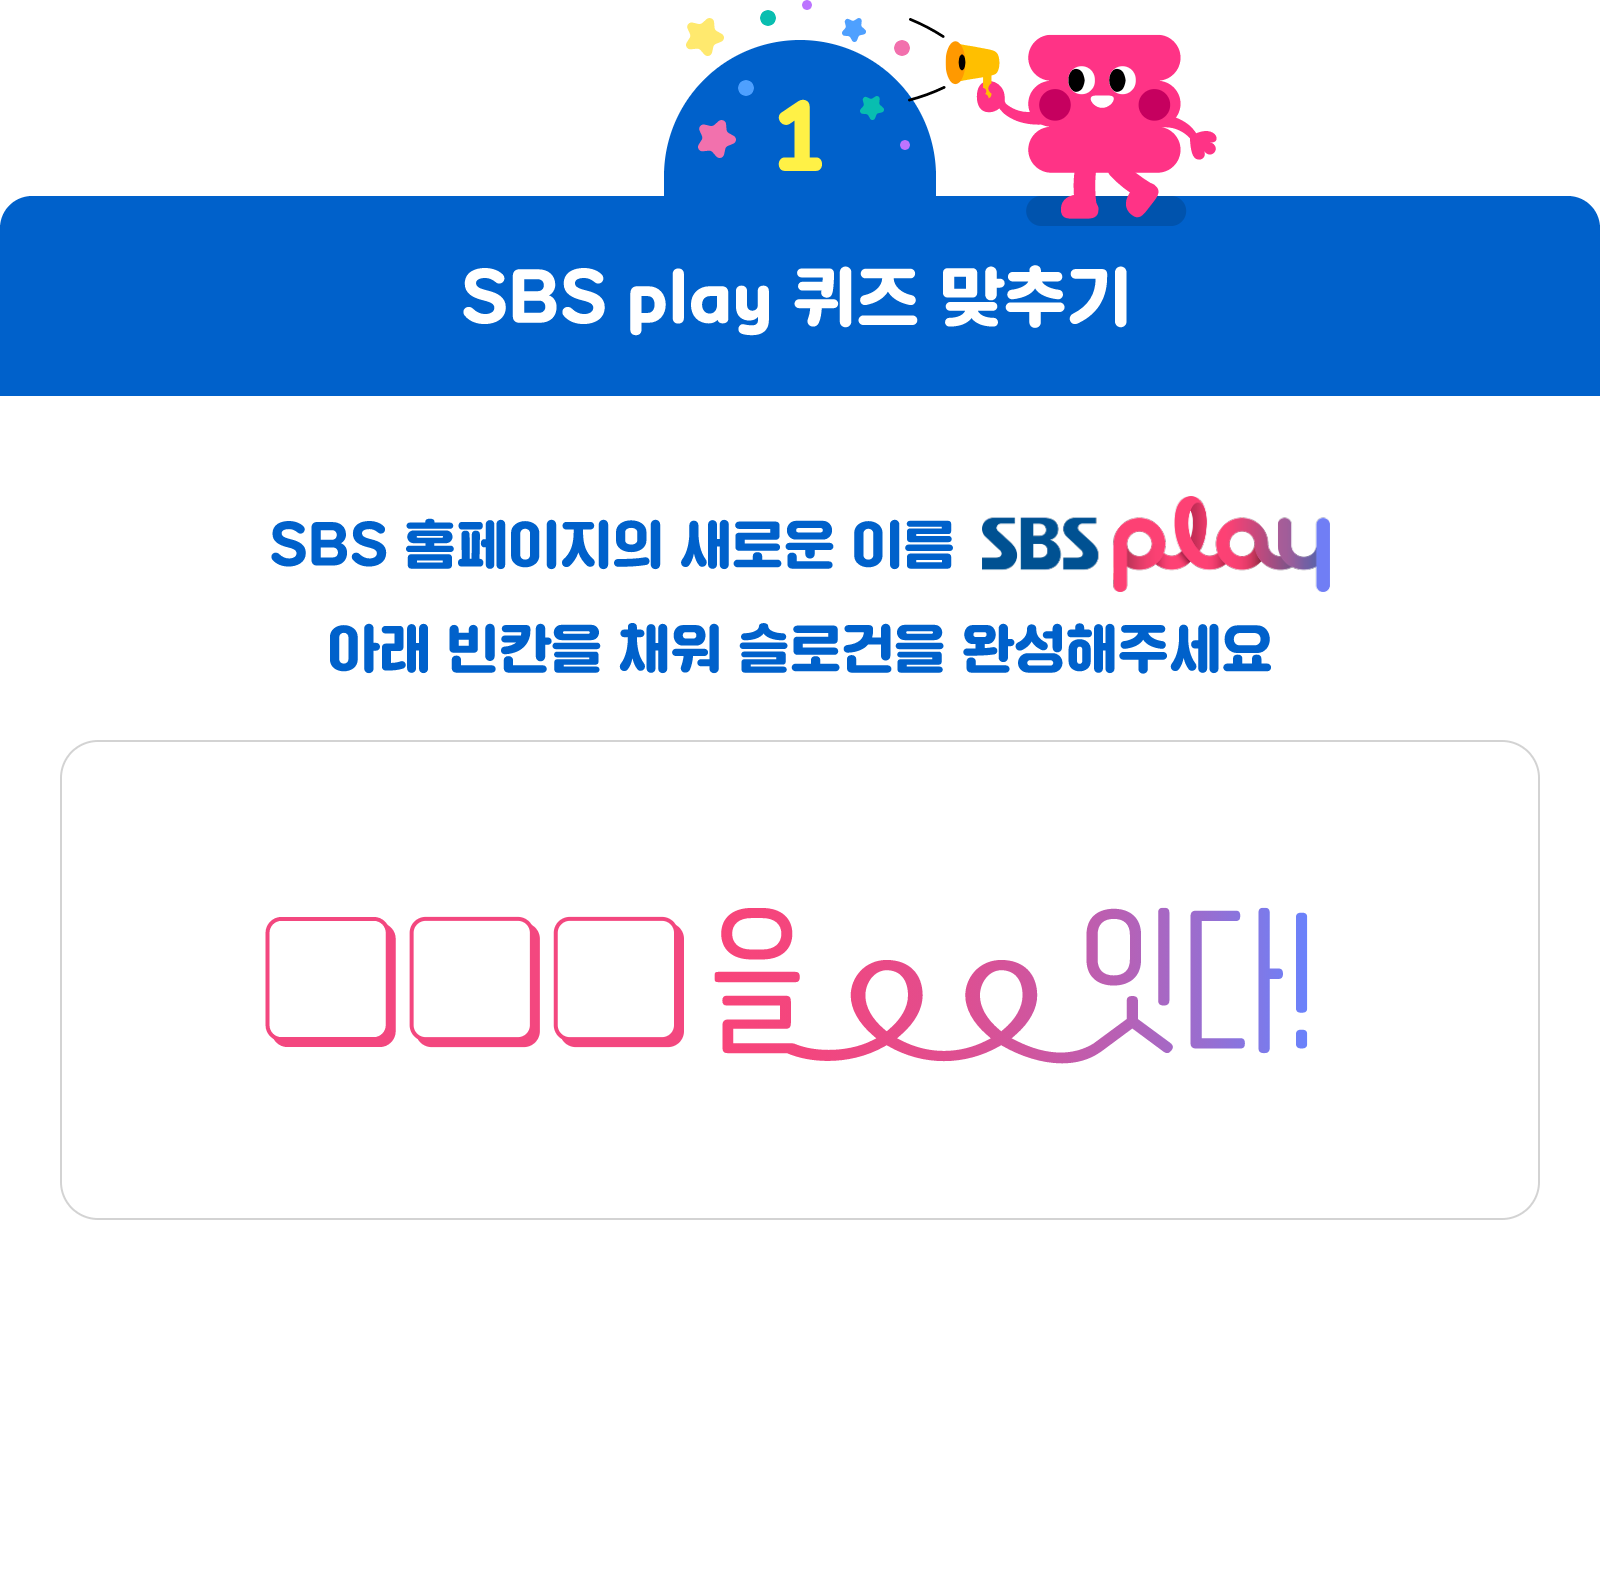 첫번째 미션 <SBS Play 퀴즈 맞추기> SBS 홈페이지의 새로운 이름~ SBS Play! 아래 빈칸을 채워 슬로건을 완성해주세요. □□□을 잇다!